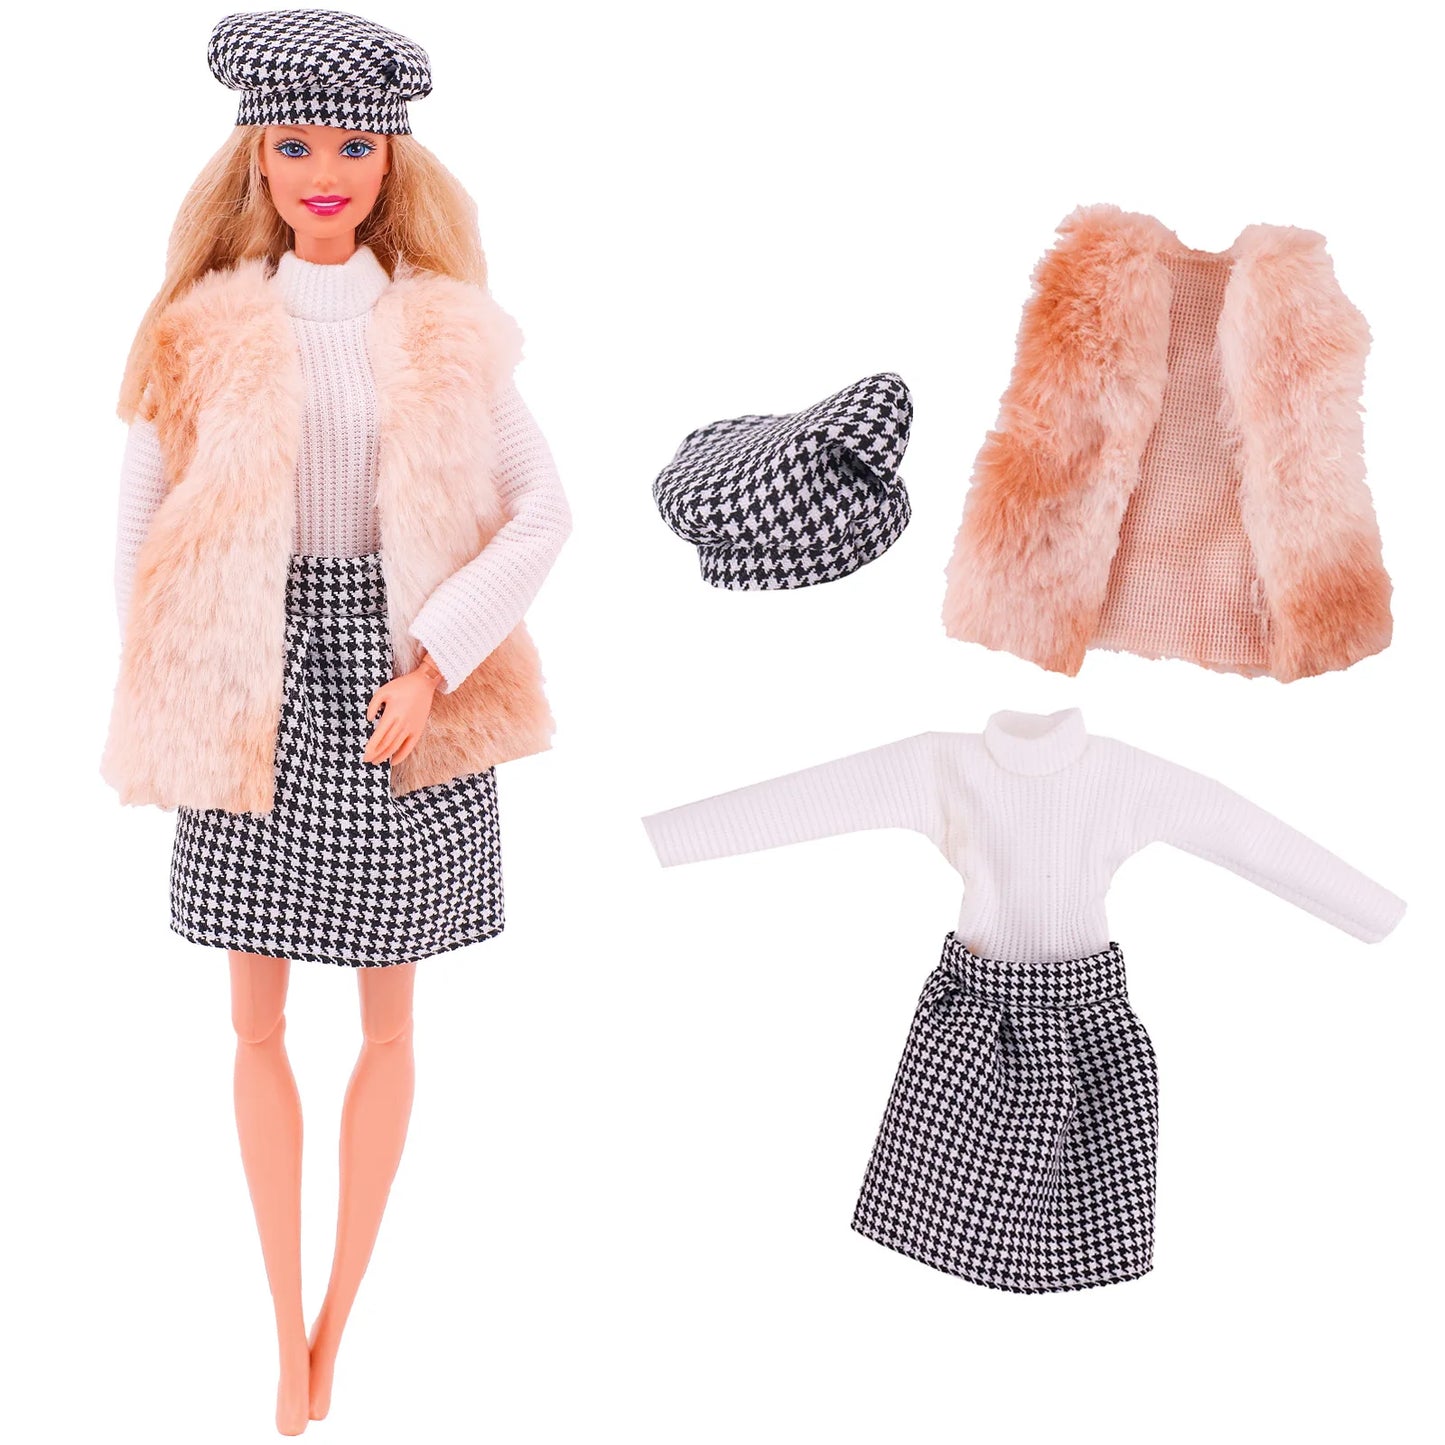 4 Pcs/Set Fur Vest Coat + Dress/Casual Outfit